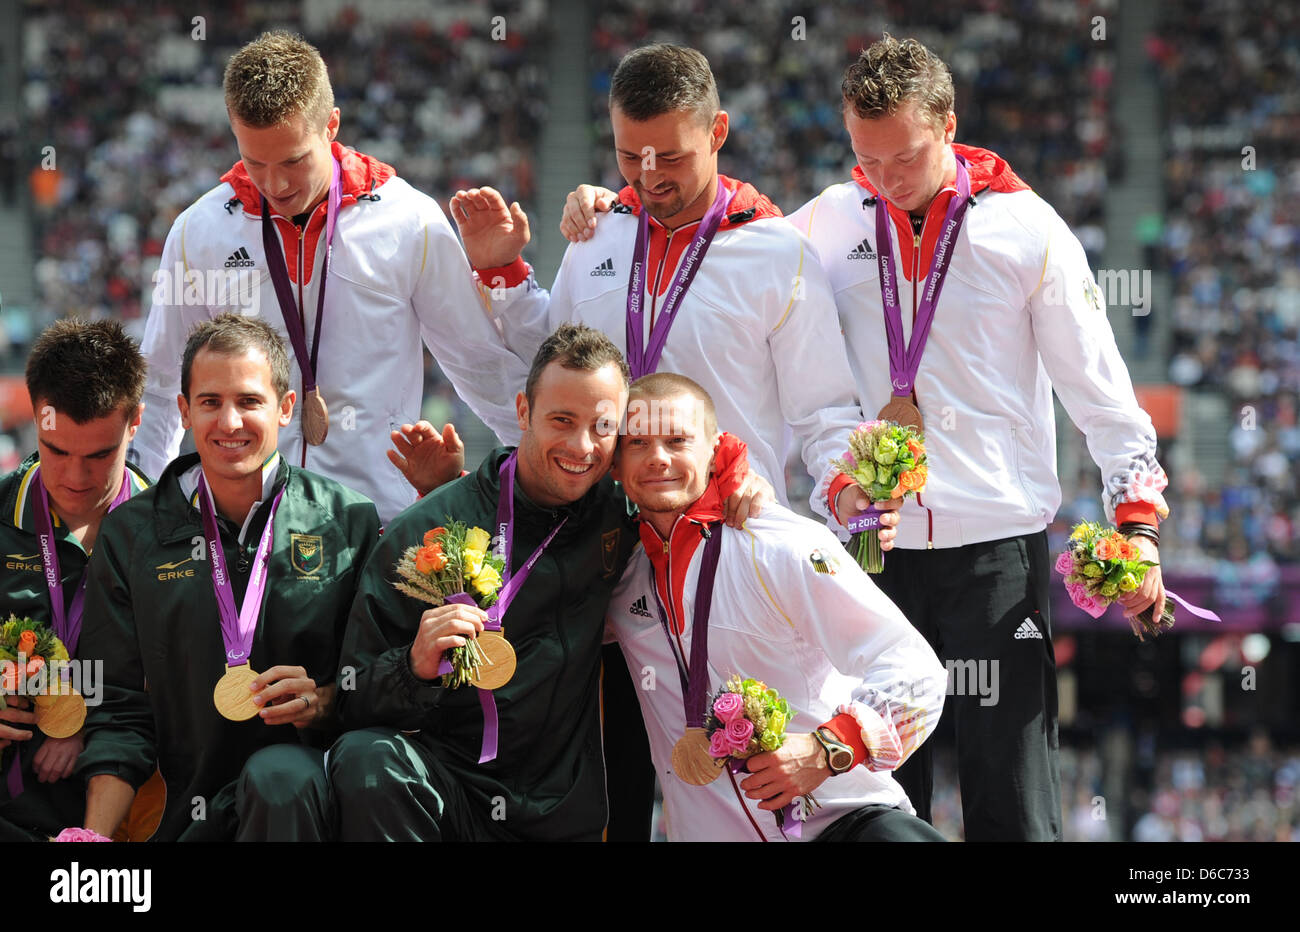 L'équipe du relais Allemand Markus Rehm (l-r au-dessus), Heinrich Popow, David Behre et Wojtek Czyz sont vus avec leurs médailles de bronze et de Sud-africains médaillés d'Zivan Smit (l-r), Arnu Fourie et Oscar Pistorius durant la cérémonie de la victoire pour les hommes du 4x100m relais -T42-46 au Stade olympique durant les Jeux Paralympiques de 2012 à Londres, Londres, Grande-Bretagne, 06 septembre 2012. Photo : Jan Banque D'Images